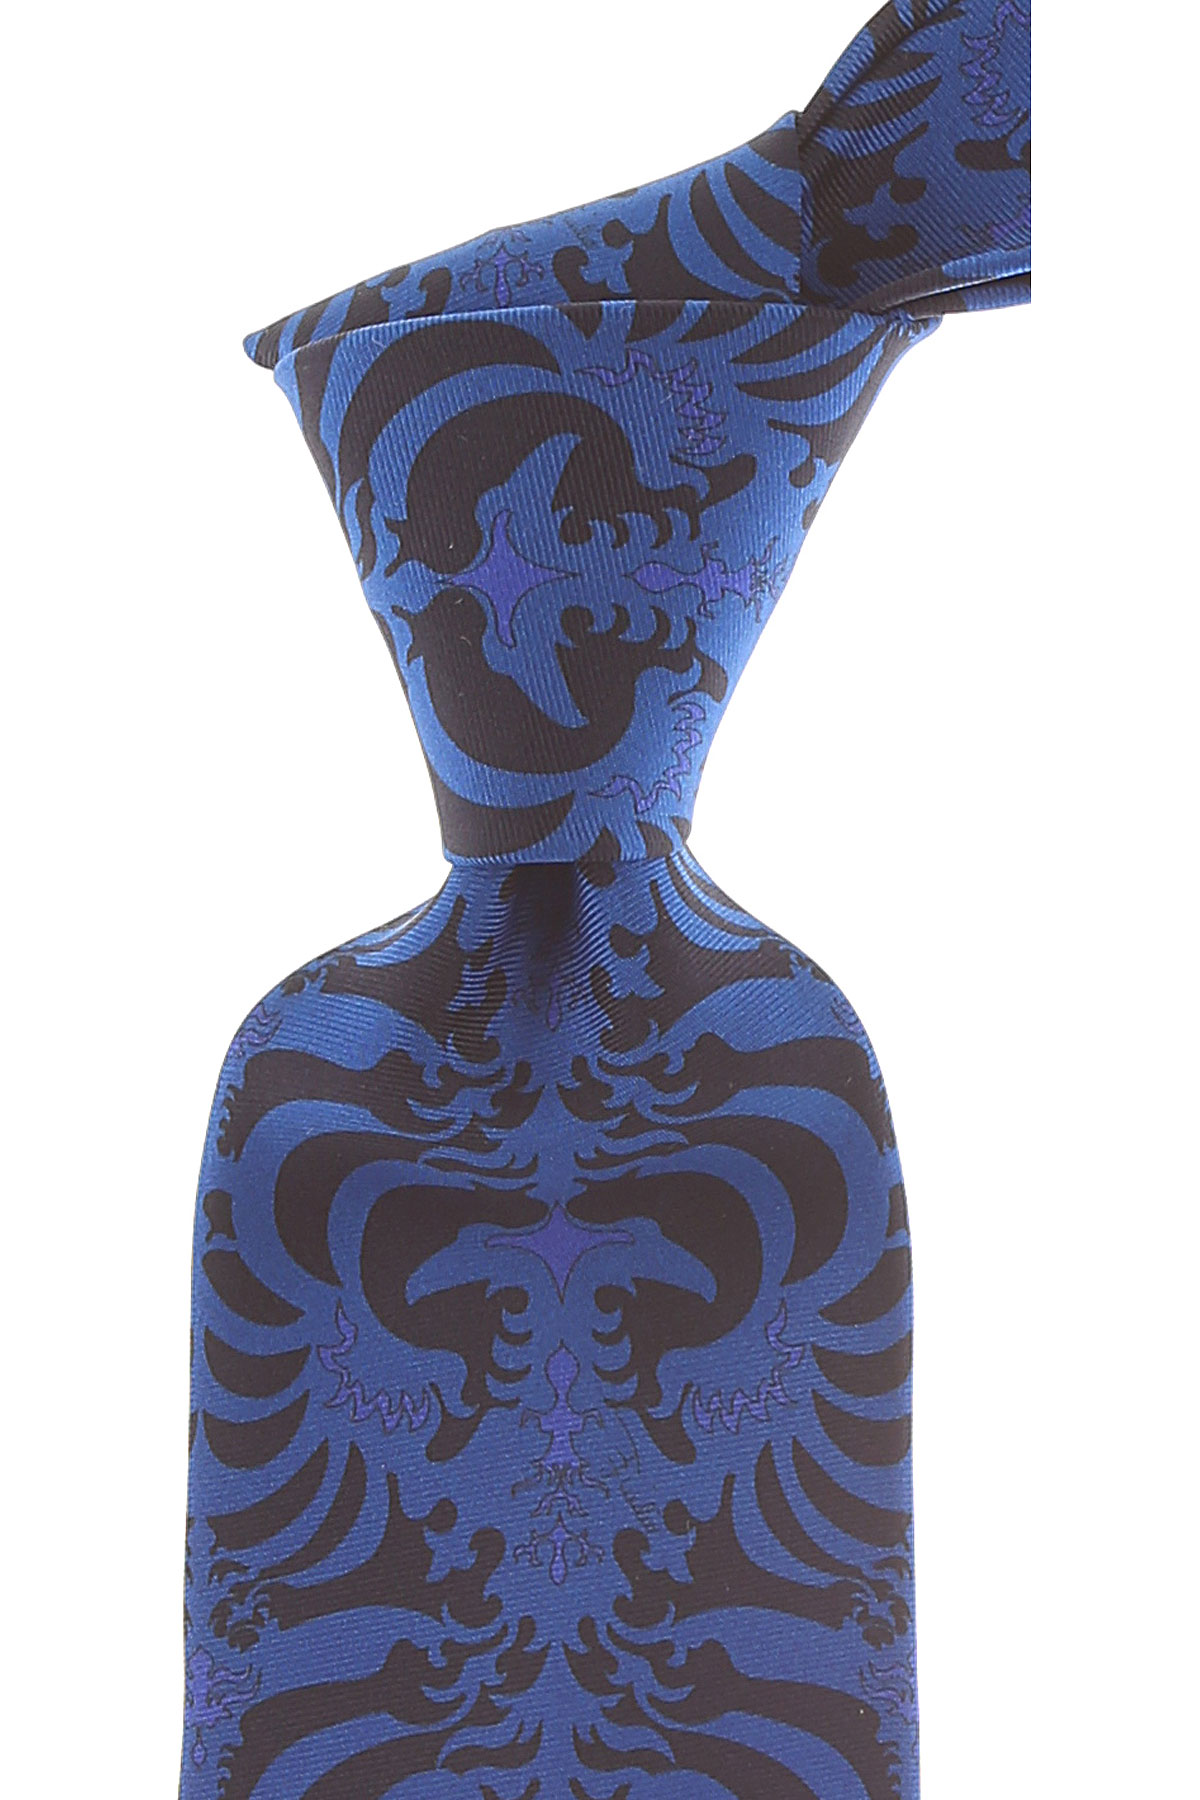 Cravates Emilio Pucci , Bleu électrique, Soie, 2017